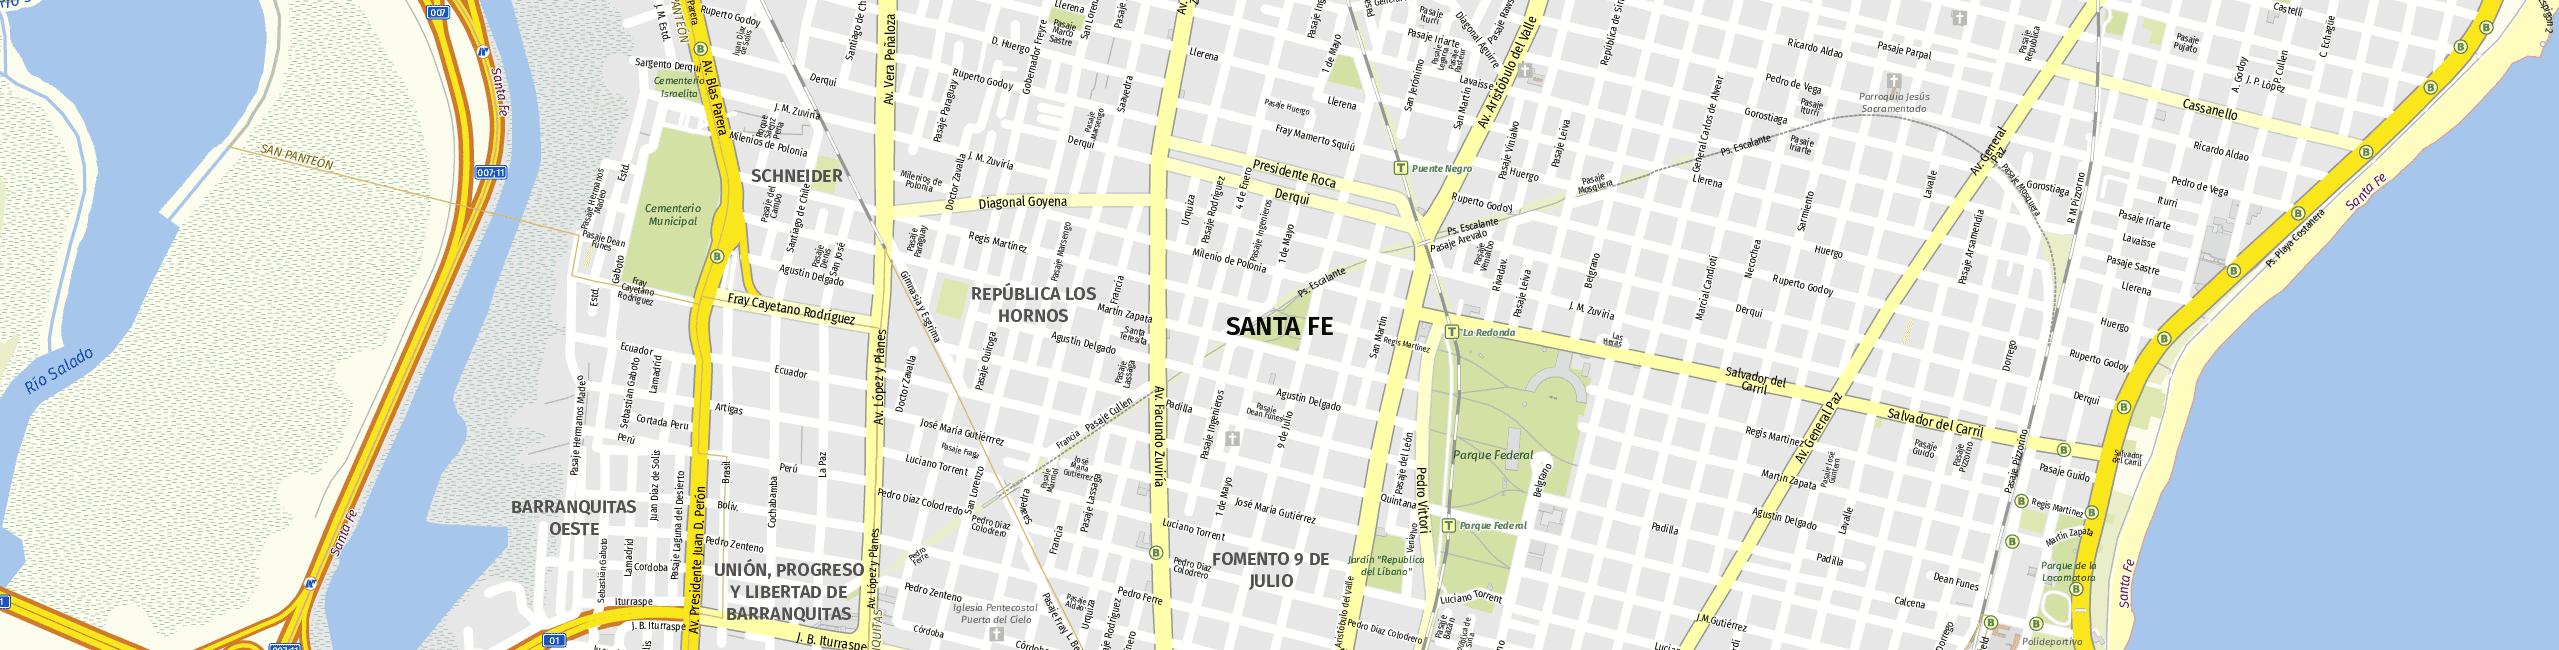 Stadtplan Santa Fe zum Downloaden.